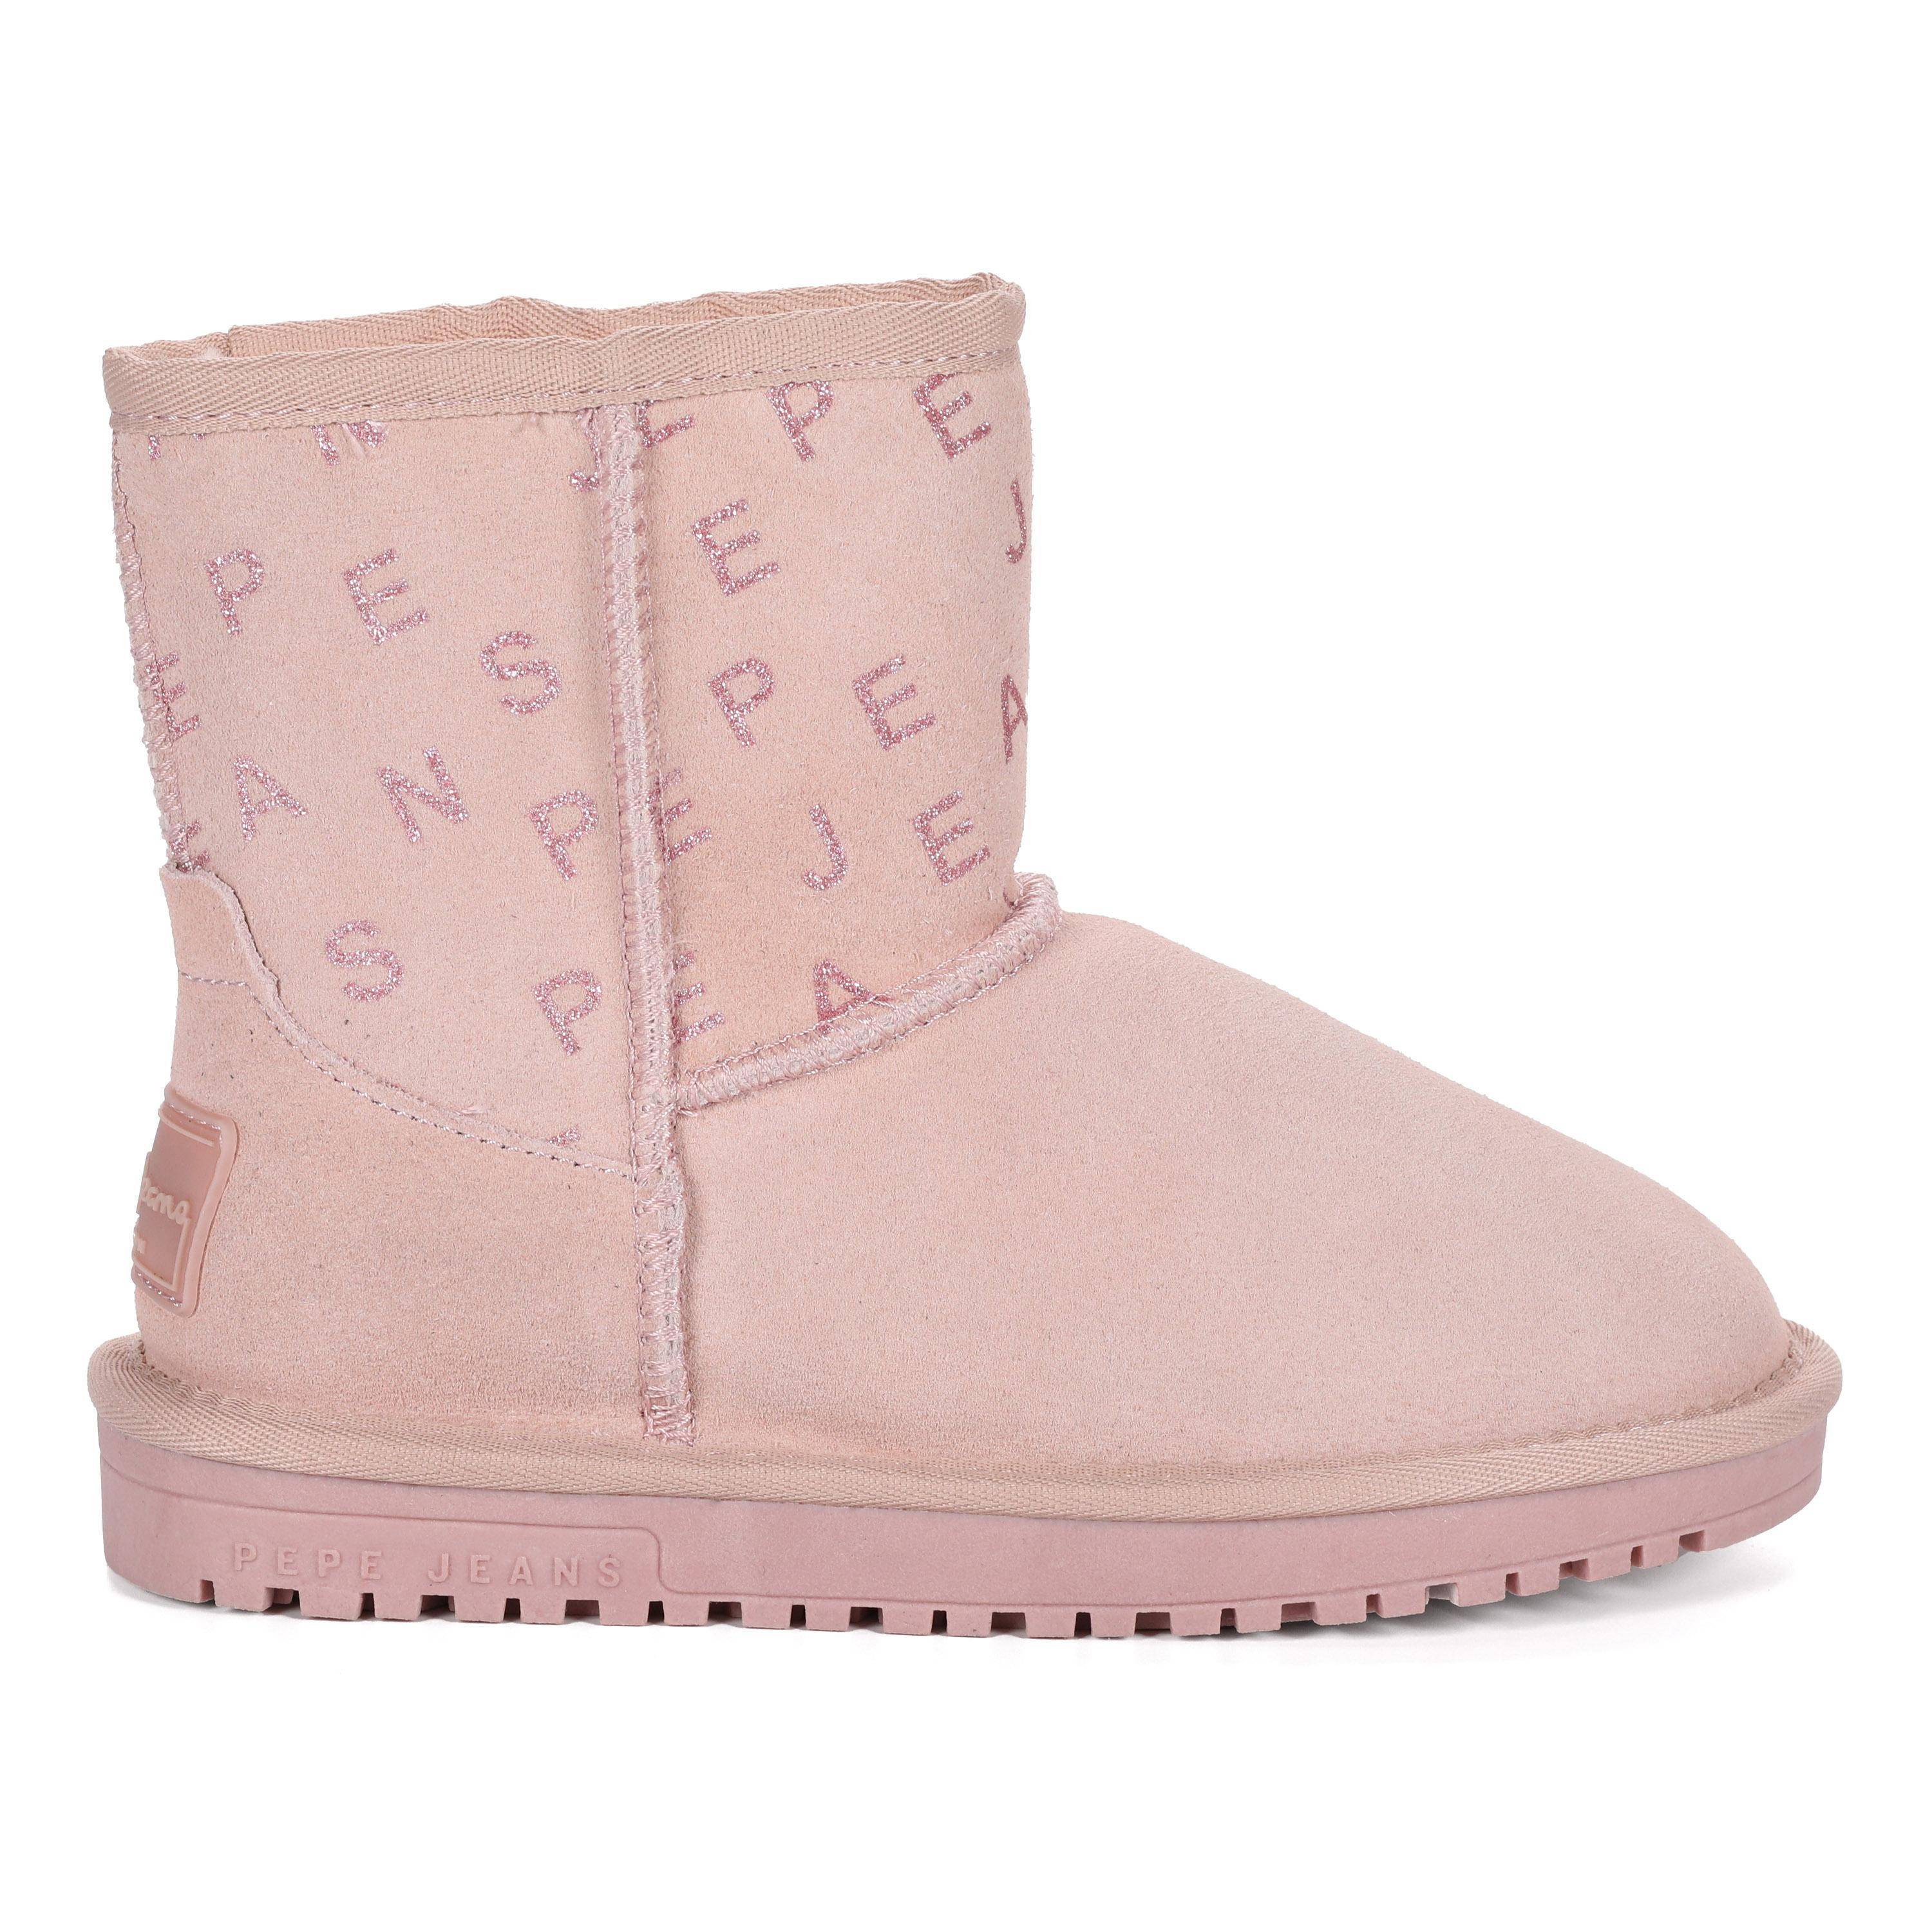 Детские ботинки из овчины (угги) Pepe Jeans London (DISS GIRL LOGY PGS50180), розовые, цвет розовый, размер 32 - фото 2